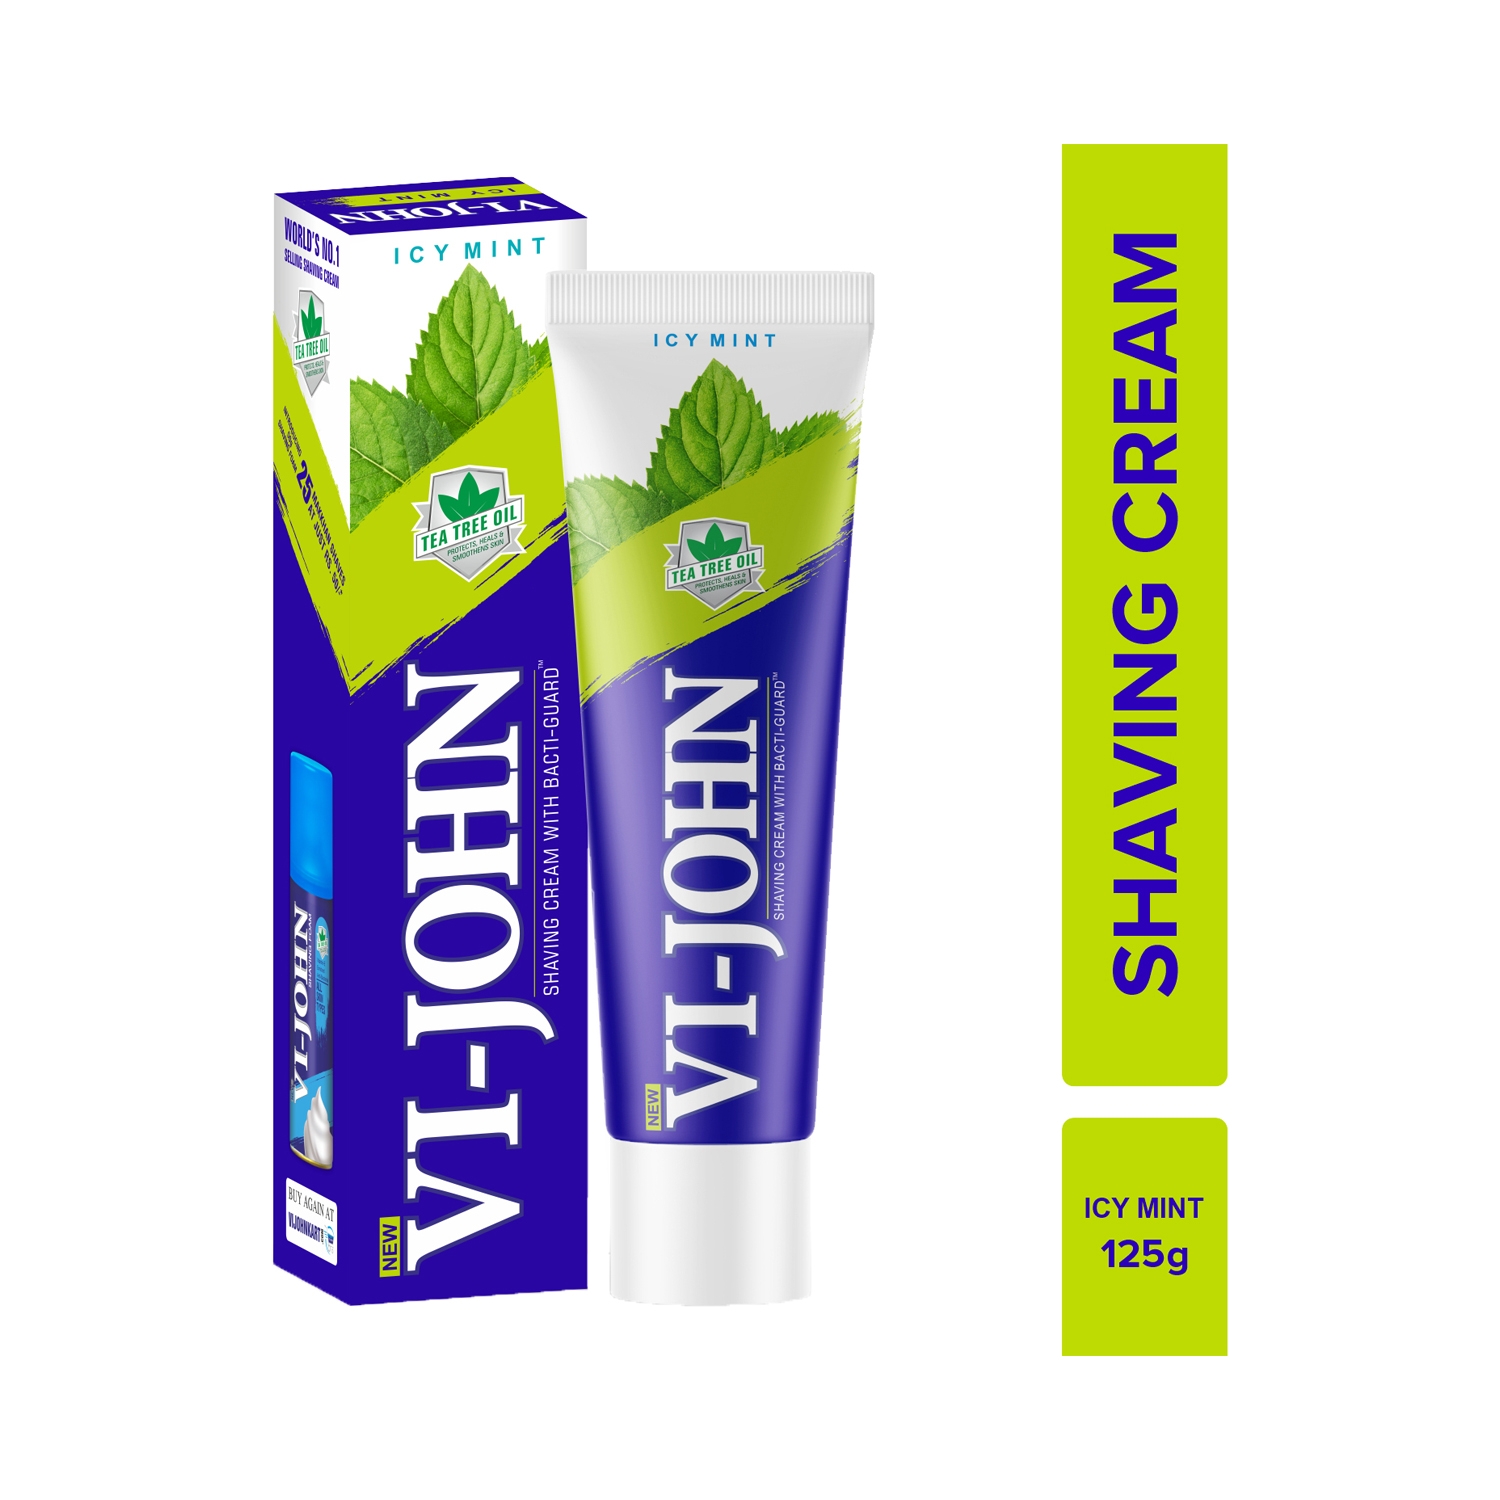 VI-JOHN | VI-JOHN Icy Mint Shaving Cream With Tea Tree Oil & Bacti-Guard (125g)